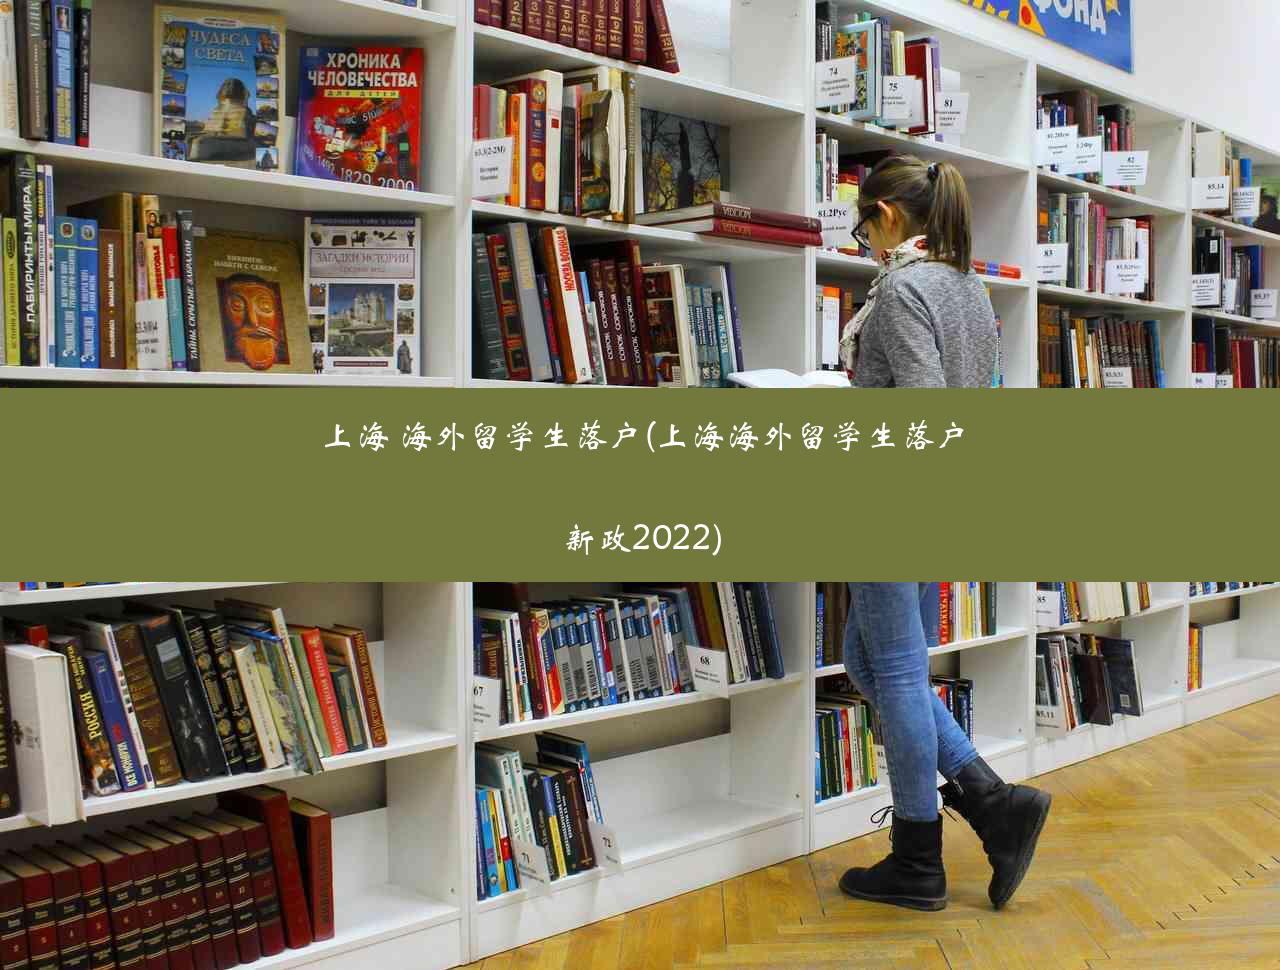 上海 海外留学生落户(上海海外留学生落户新政2022)